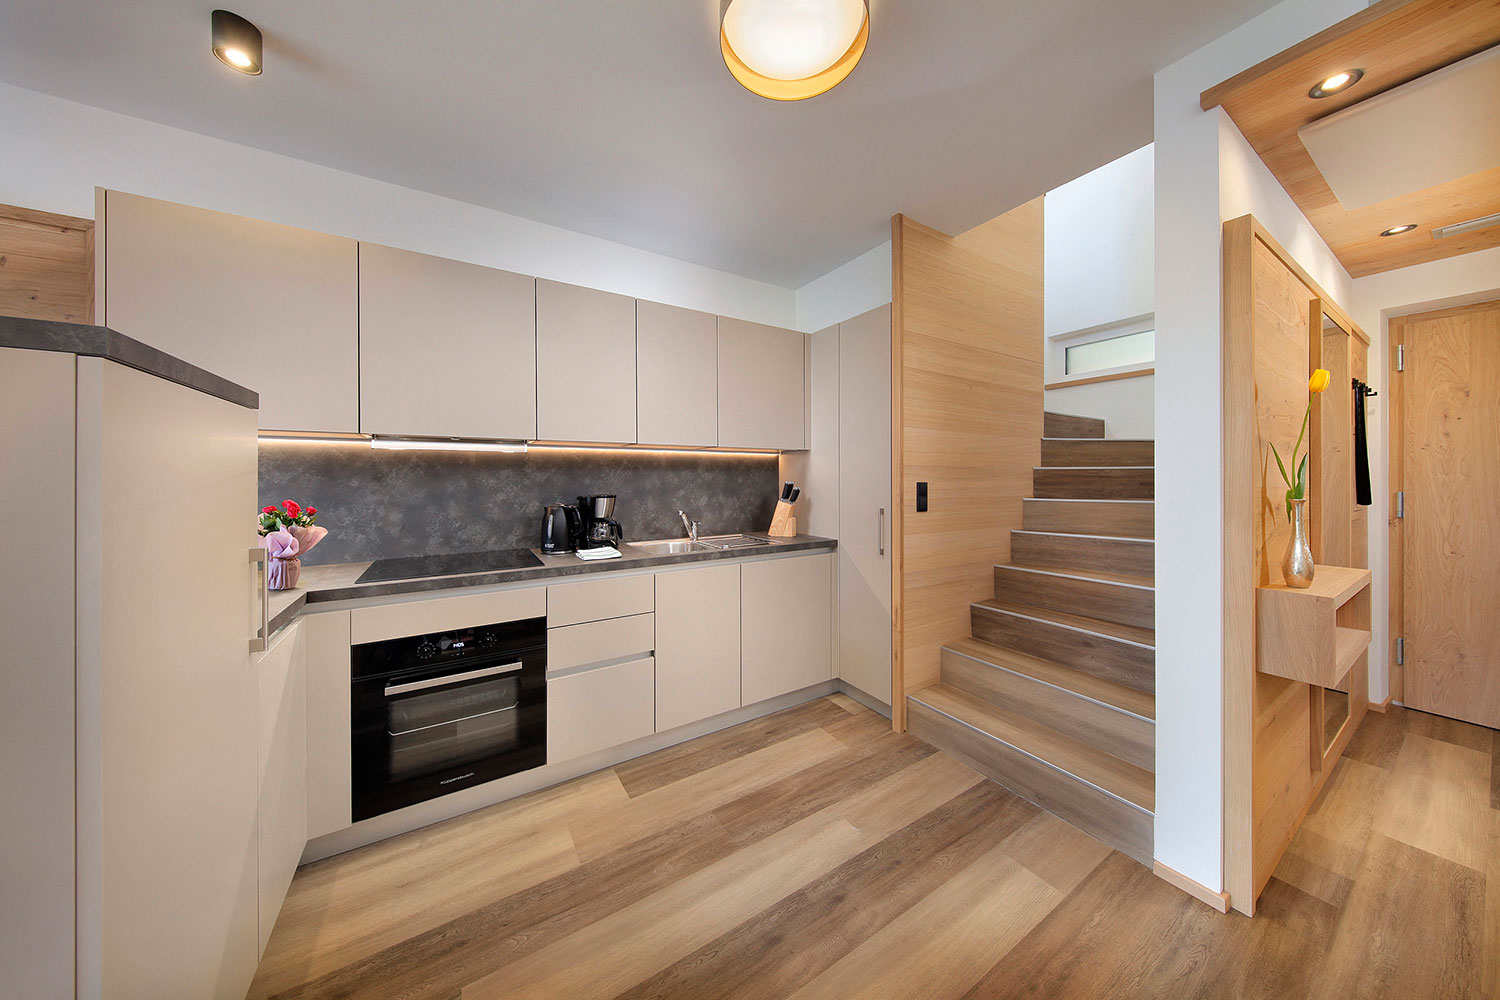 Apartment with spacious kitchen